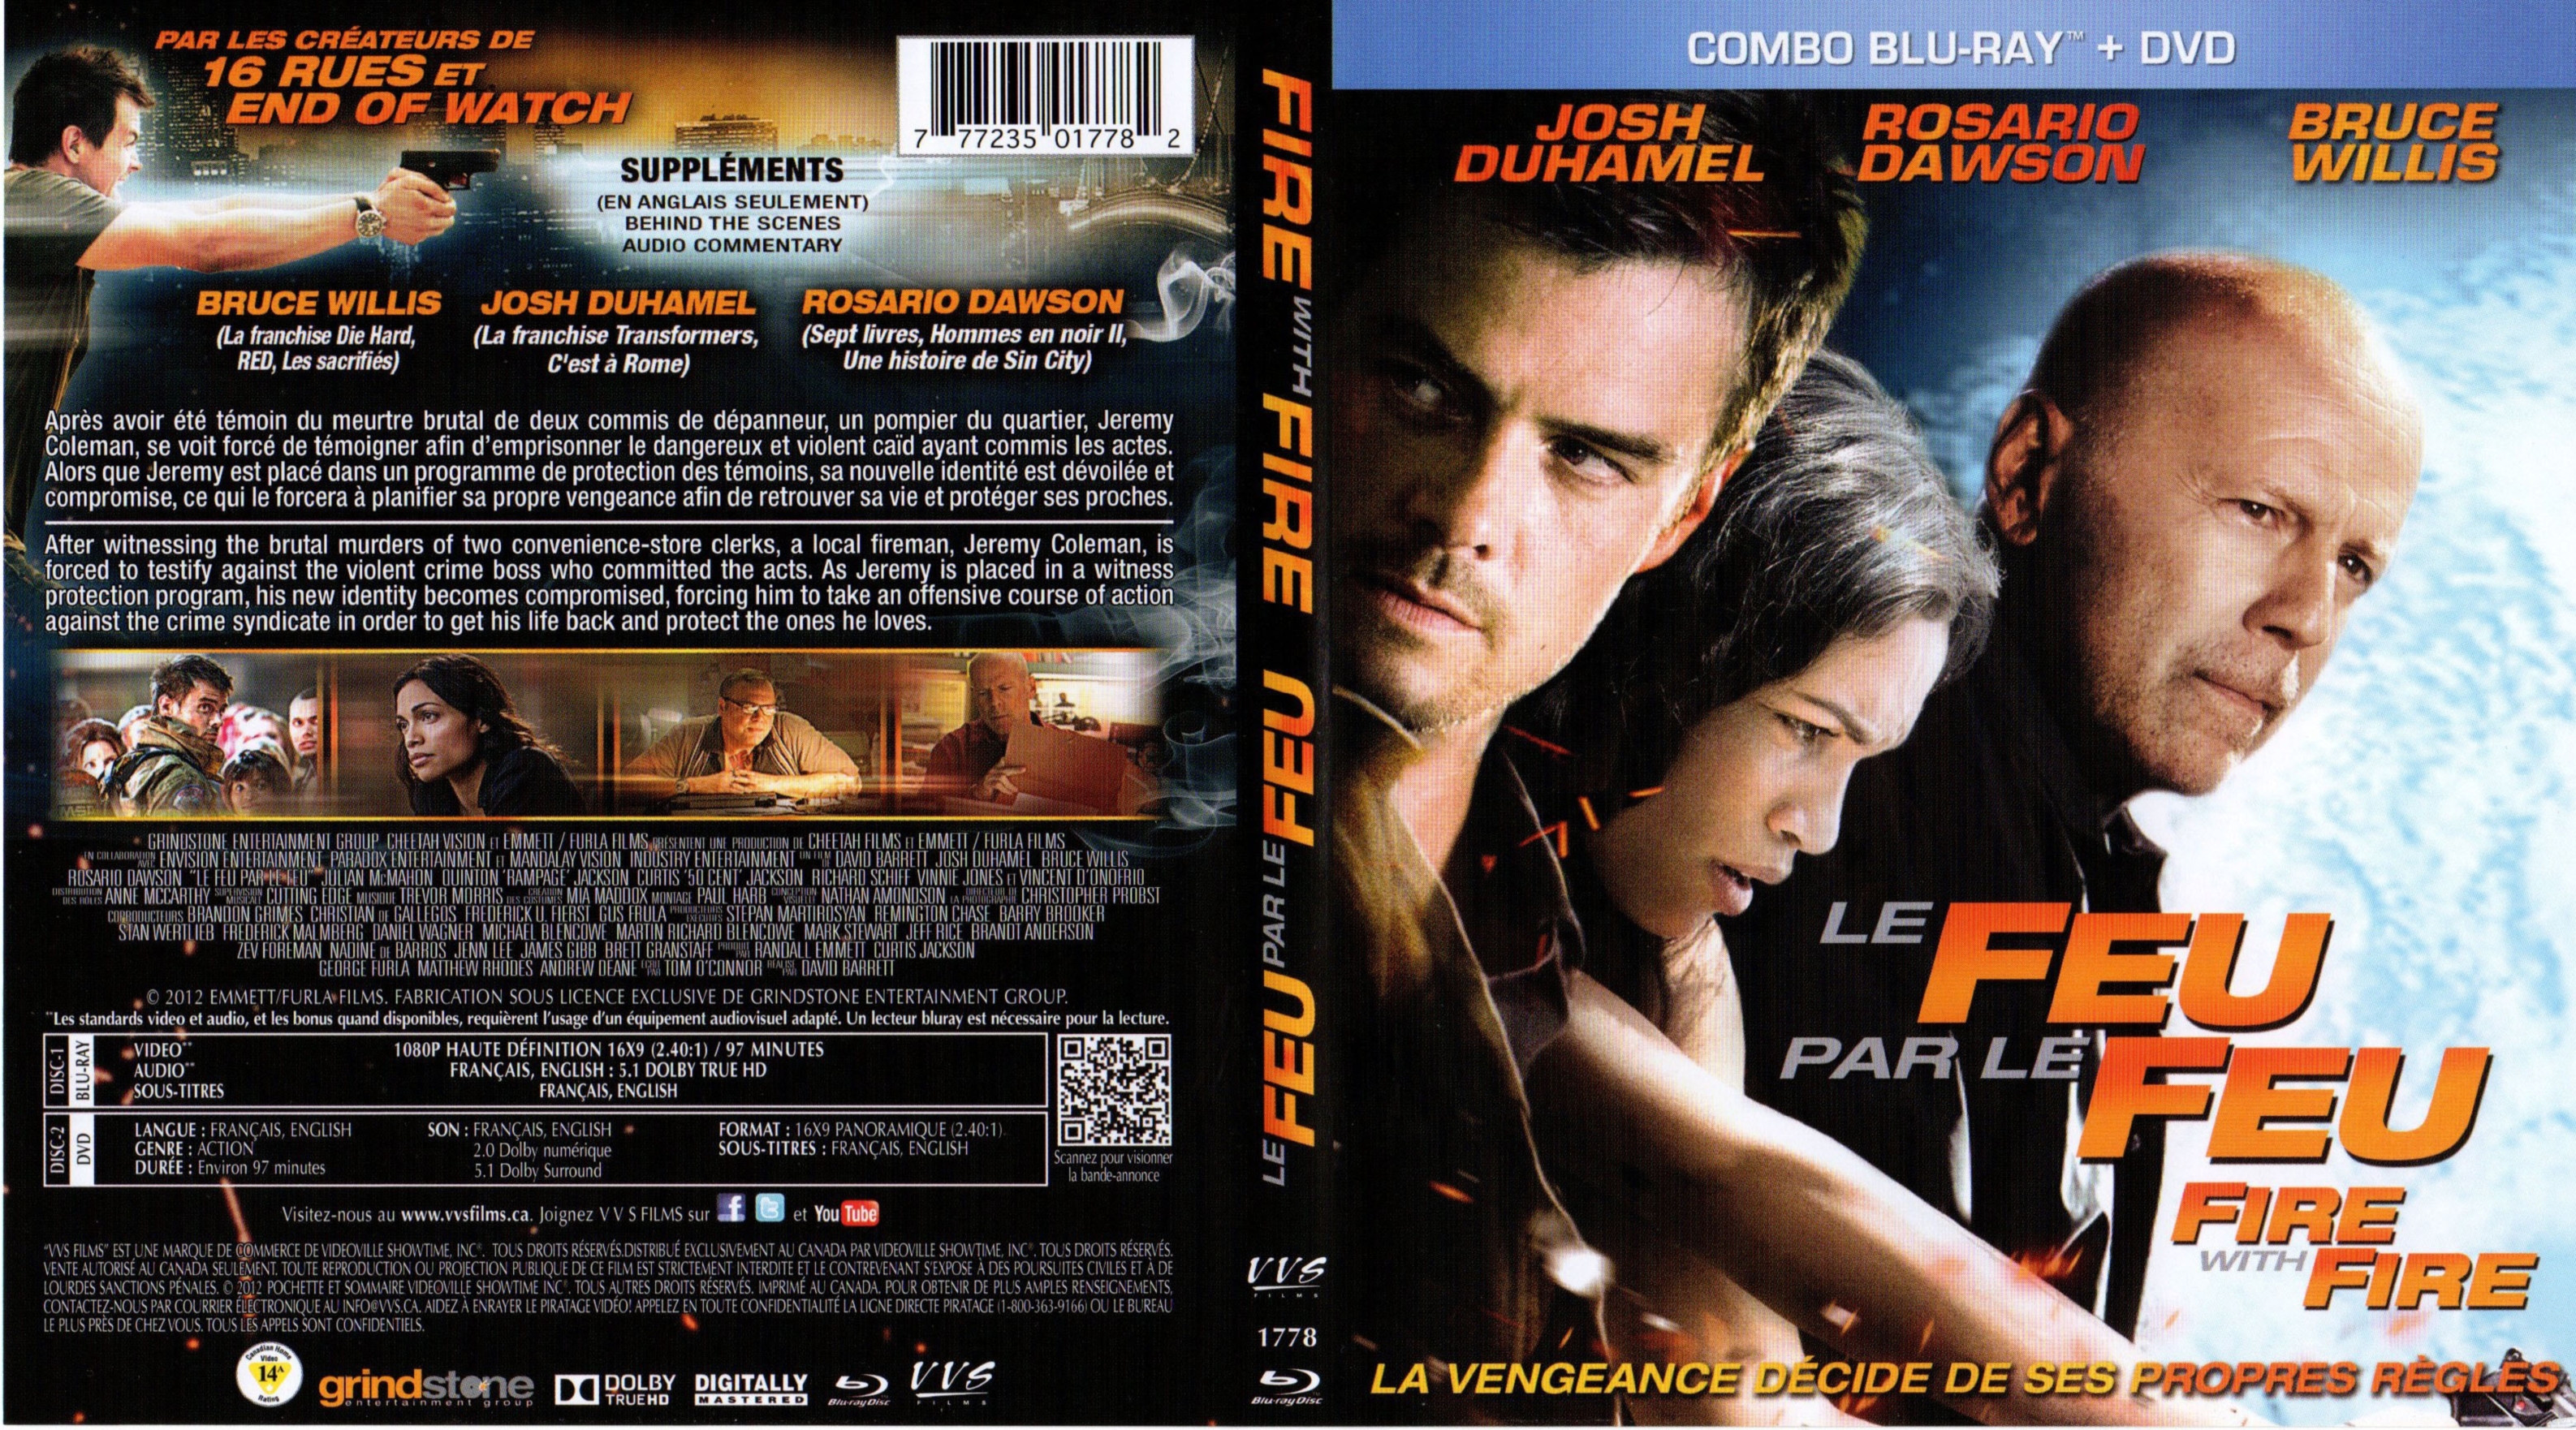 Jaquette DVD Le feu par le feu - Fire with Fire (Canadienne) (BLU-RAY)